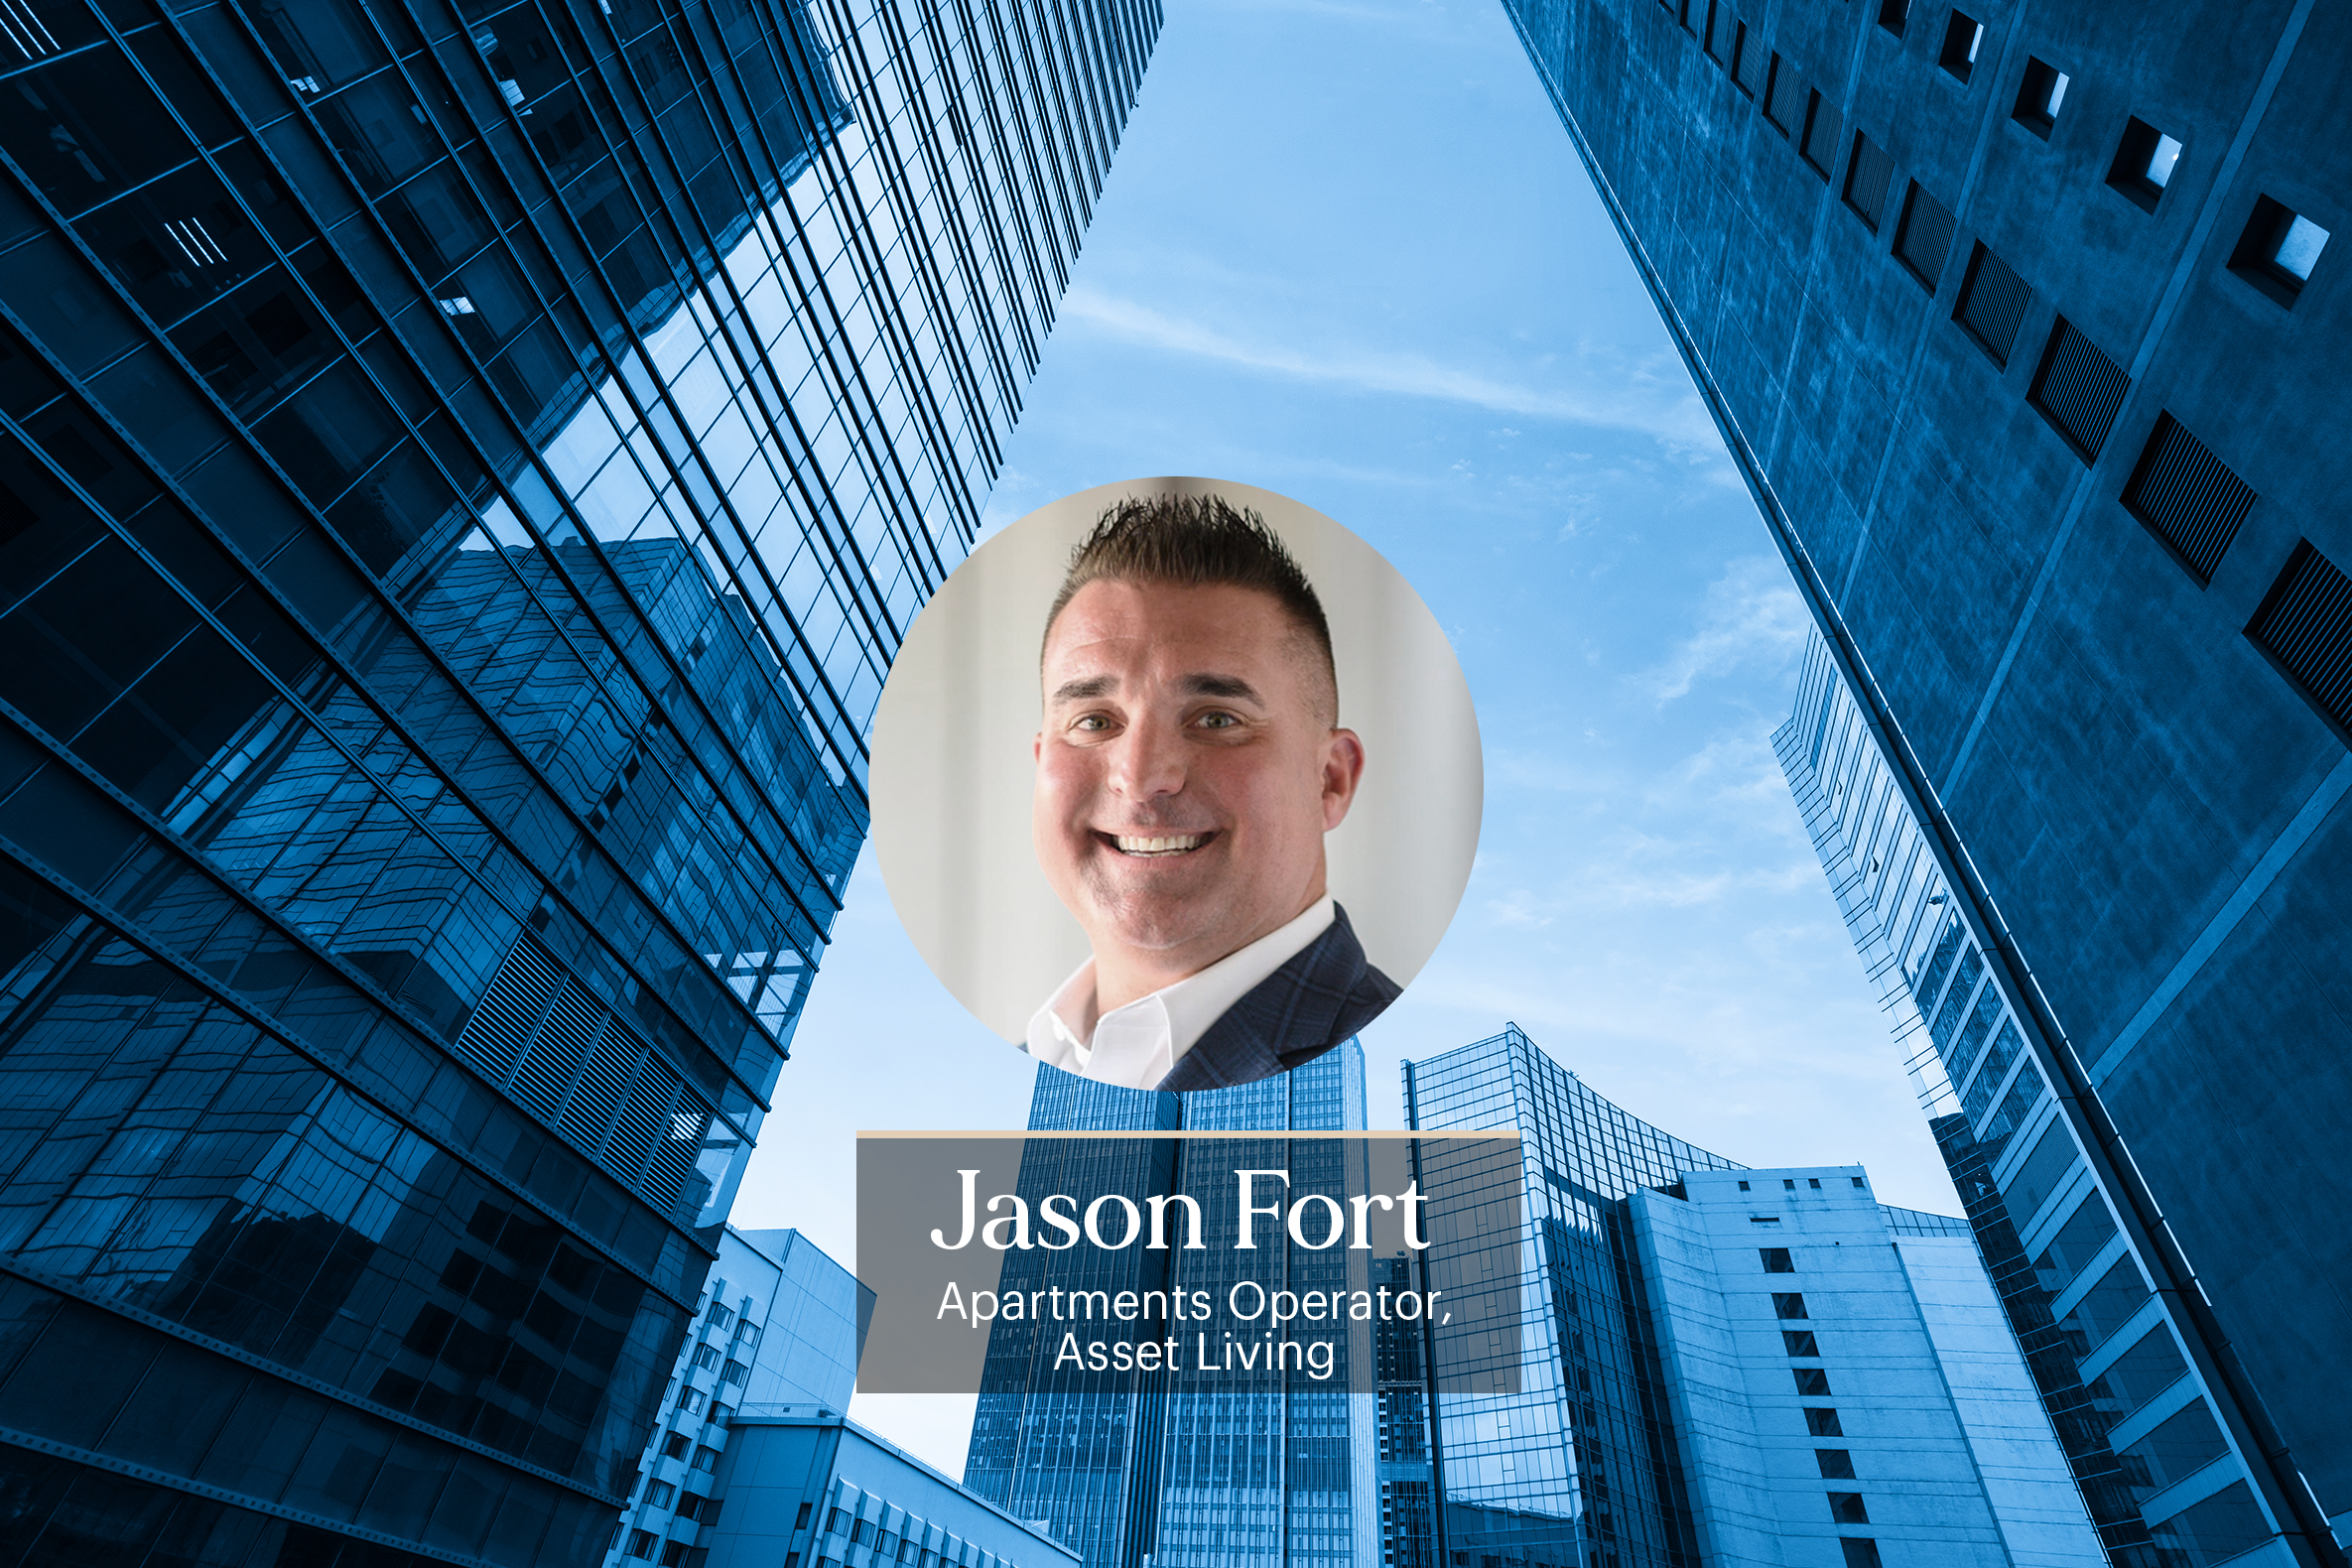 Entrevista a Jason Fort de Asset Living - Interview with Jason Fort